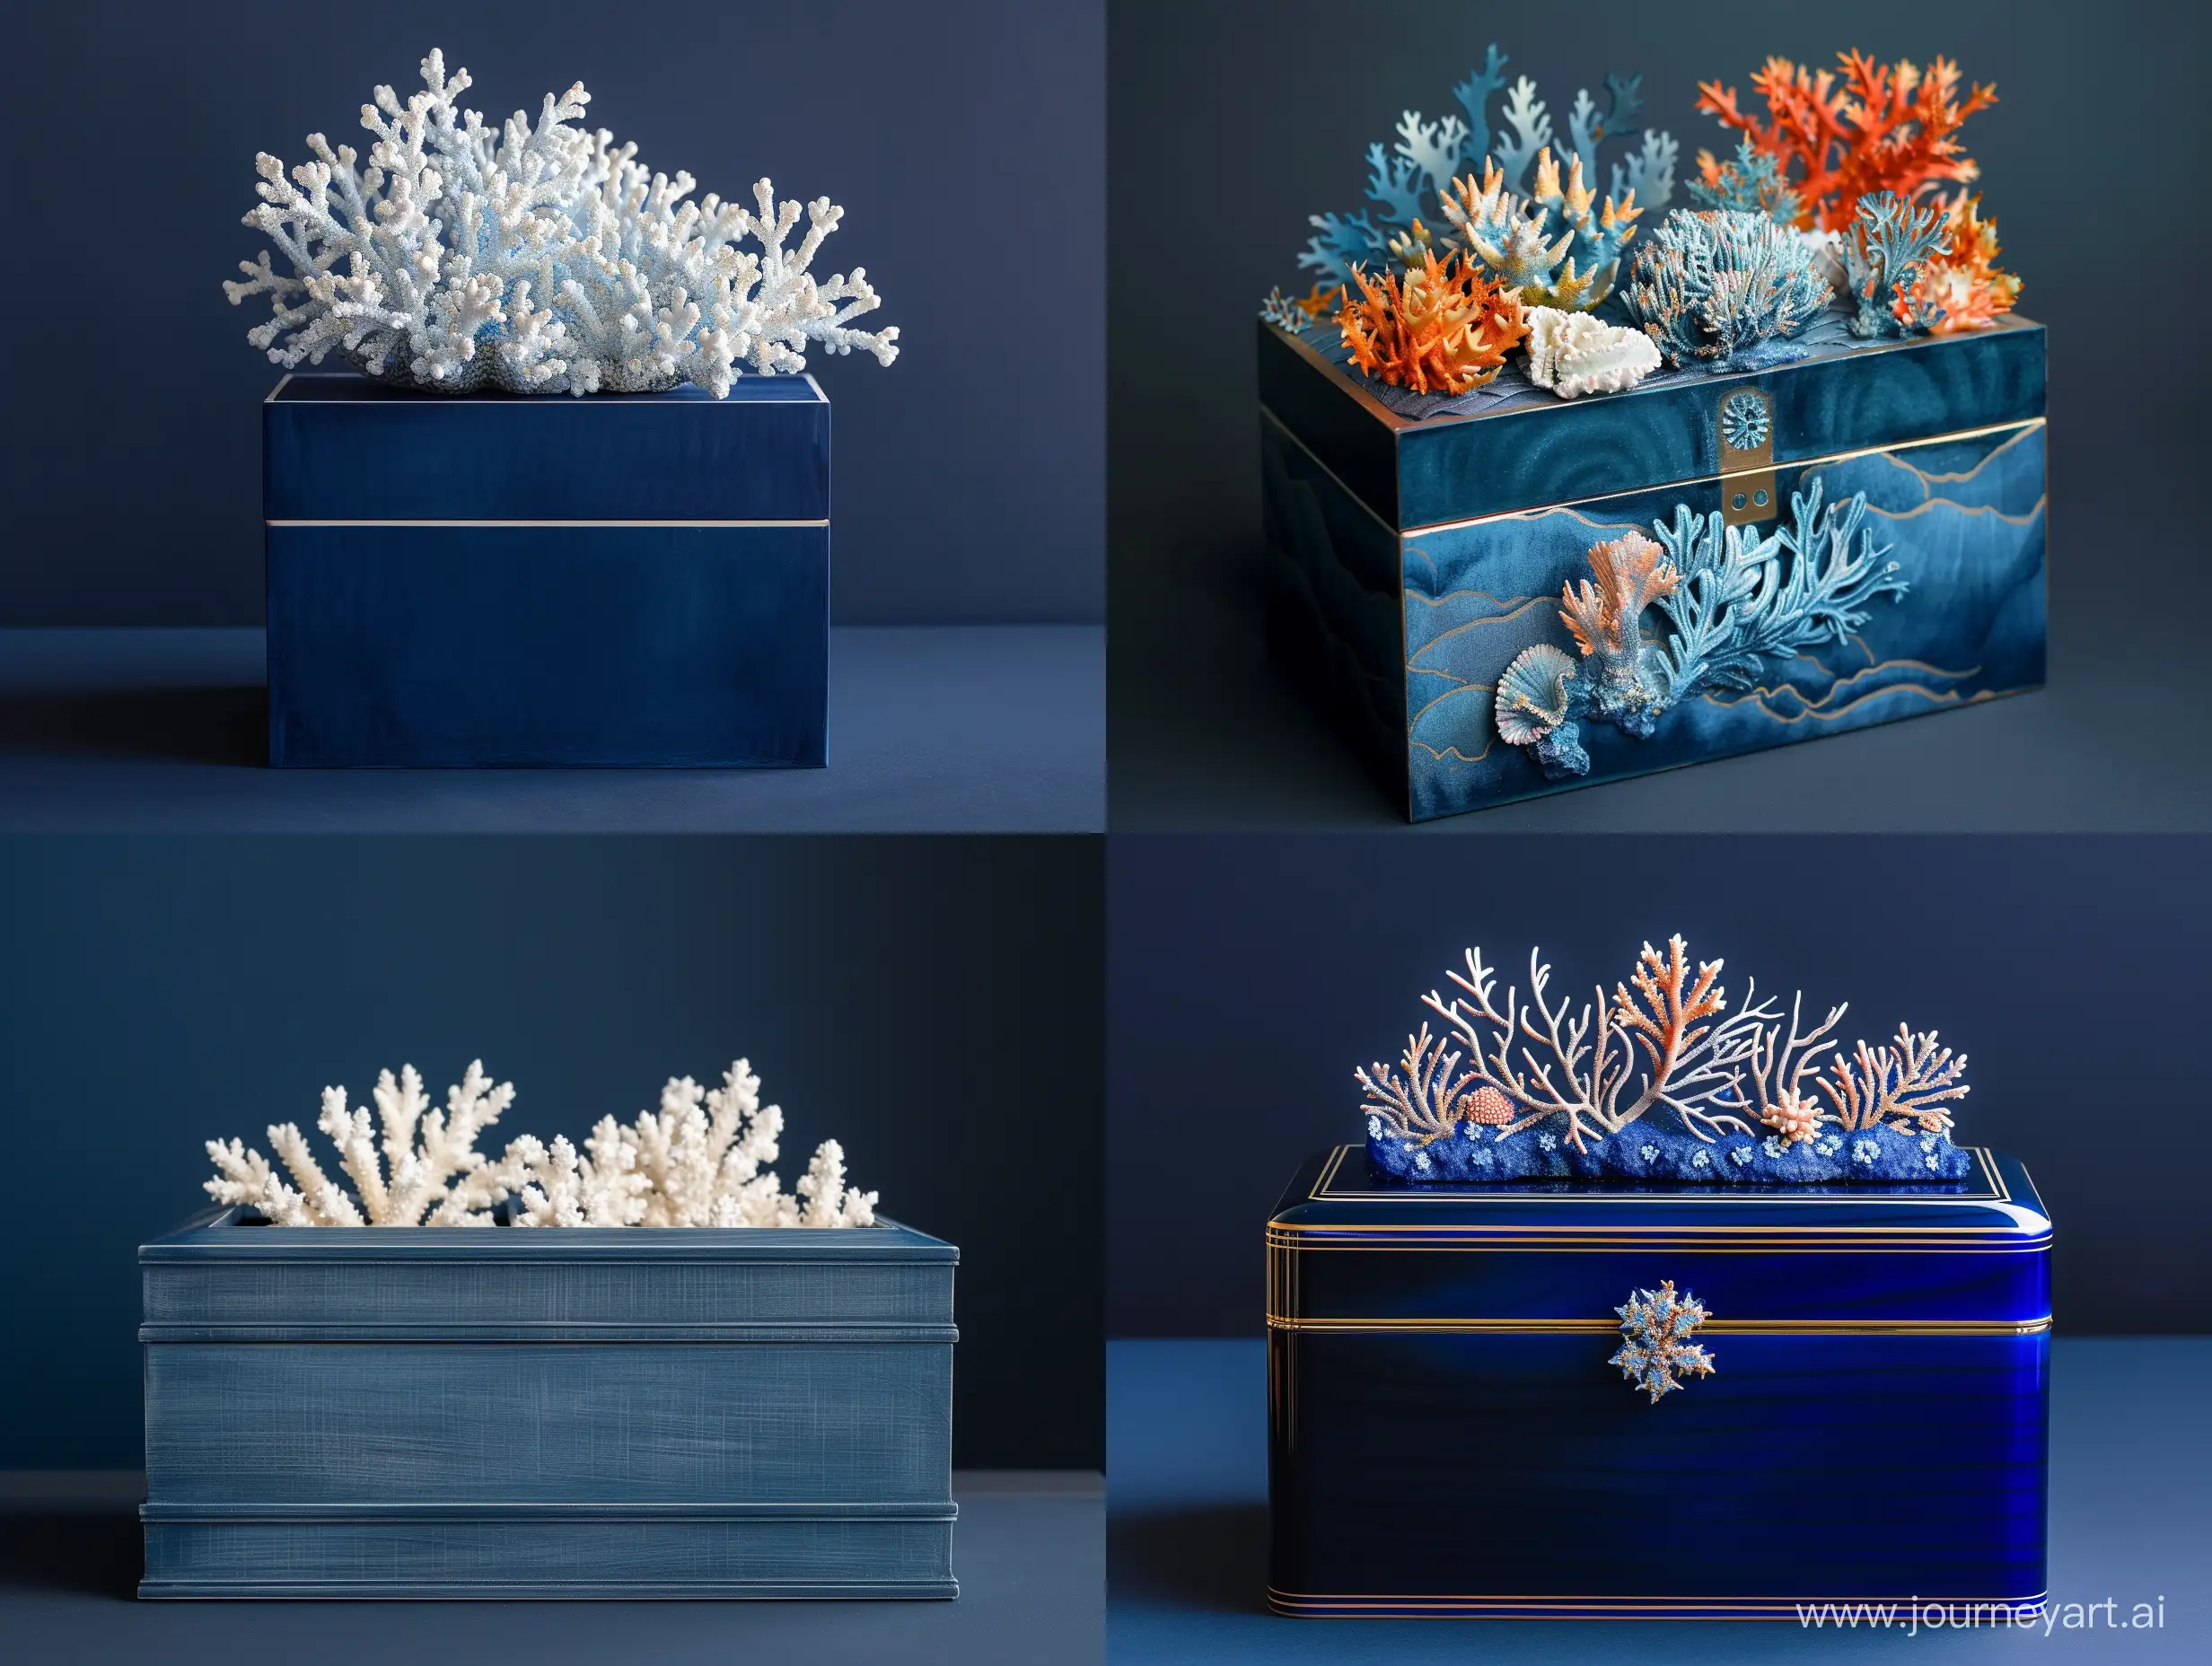 Цвет фона – темно синий. Топ коробки оформляем в морском стиле, используем кораллы вместо цветов